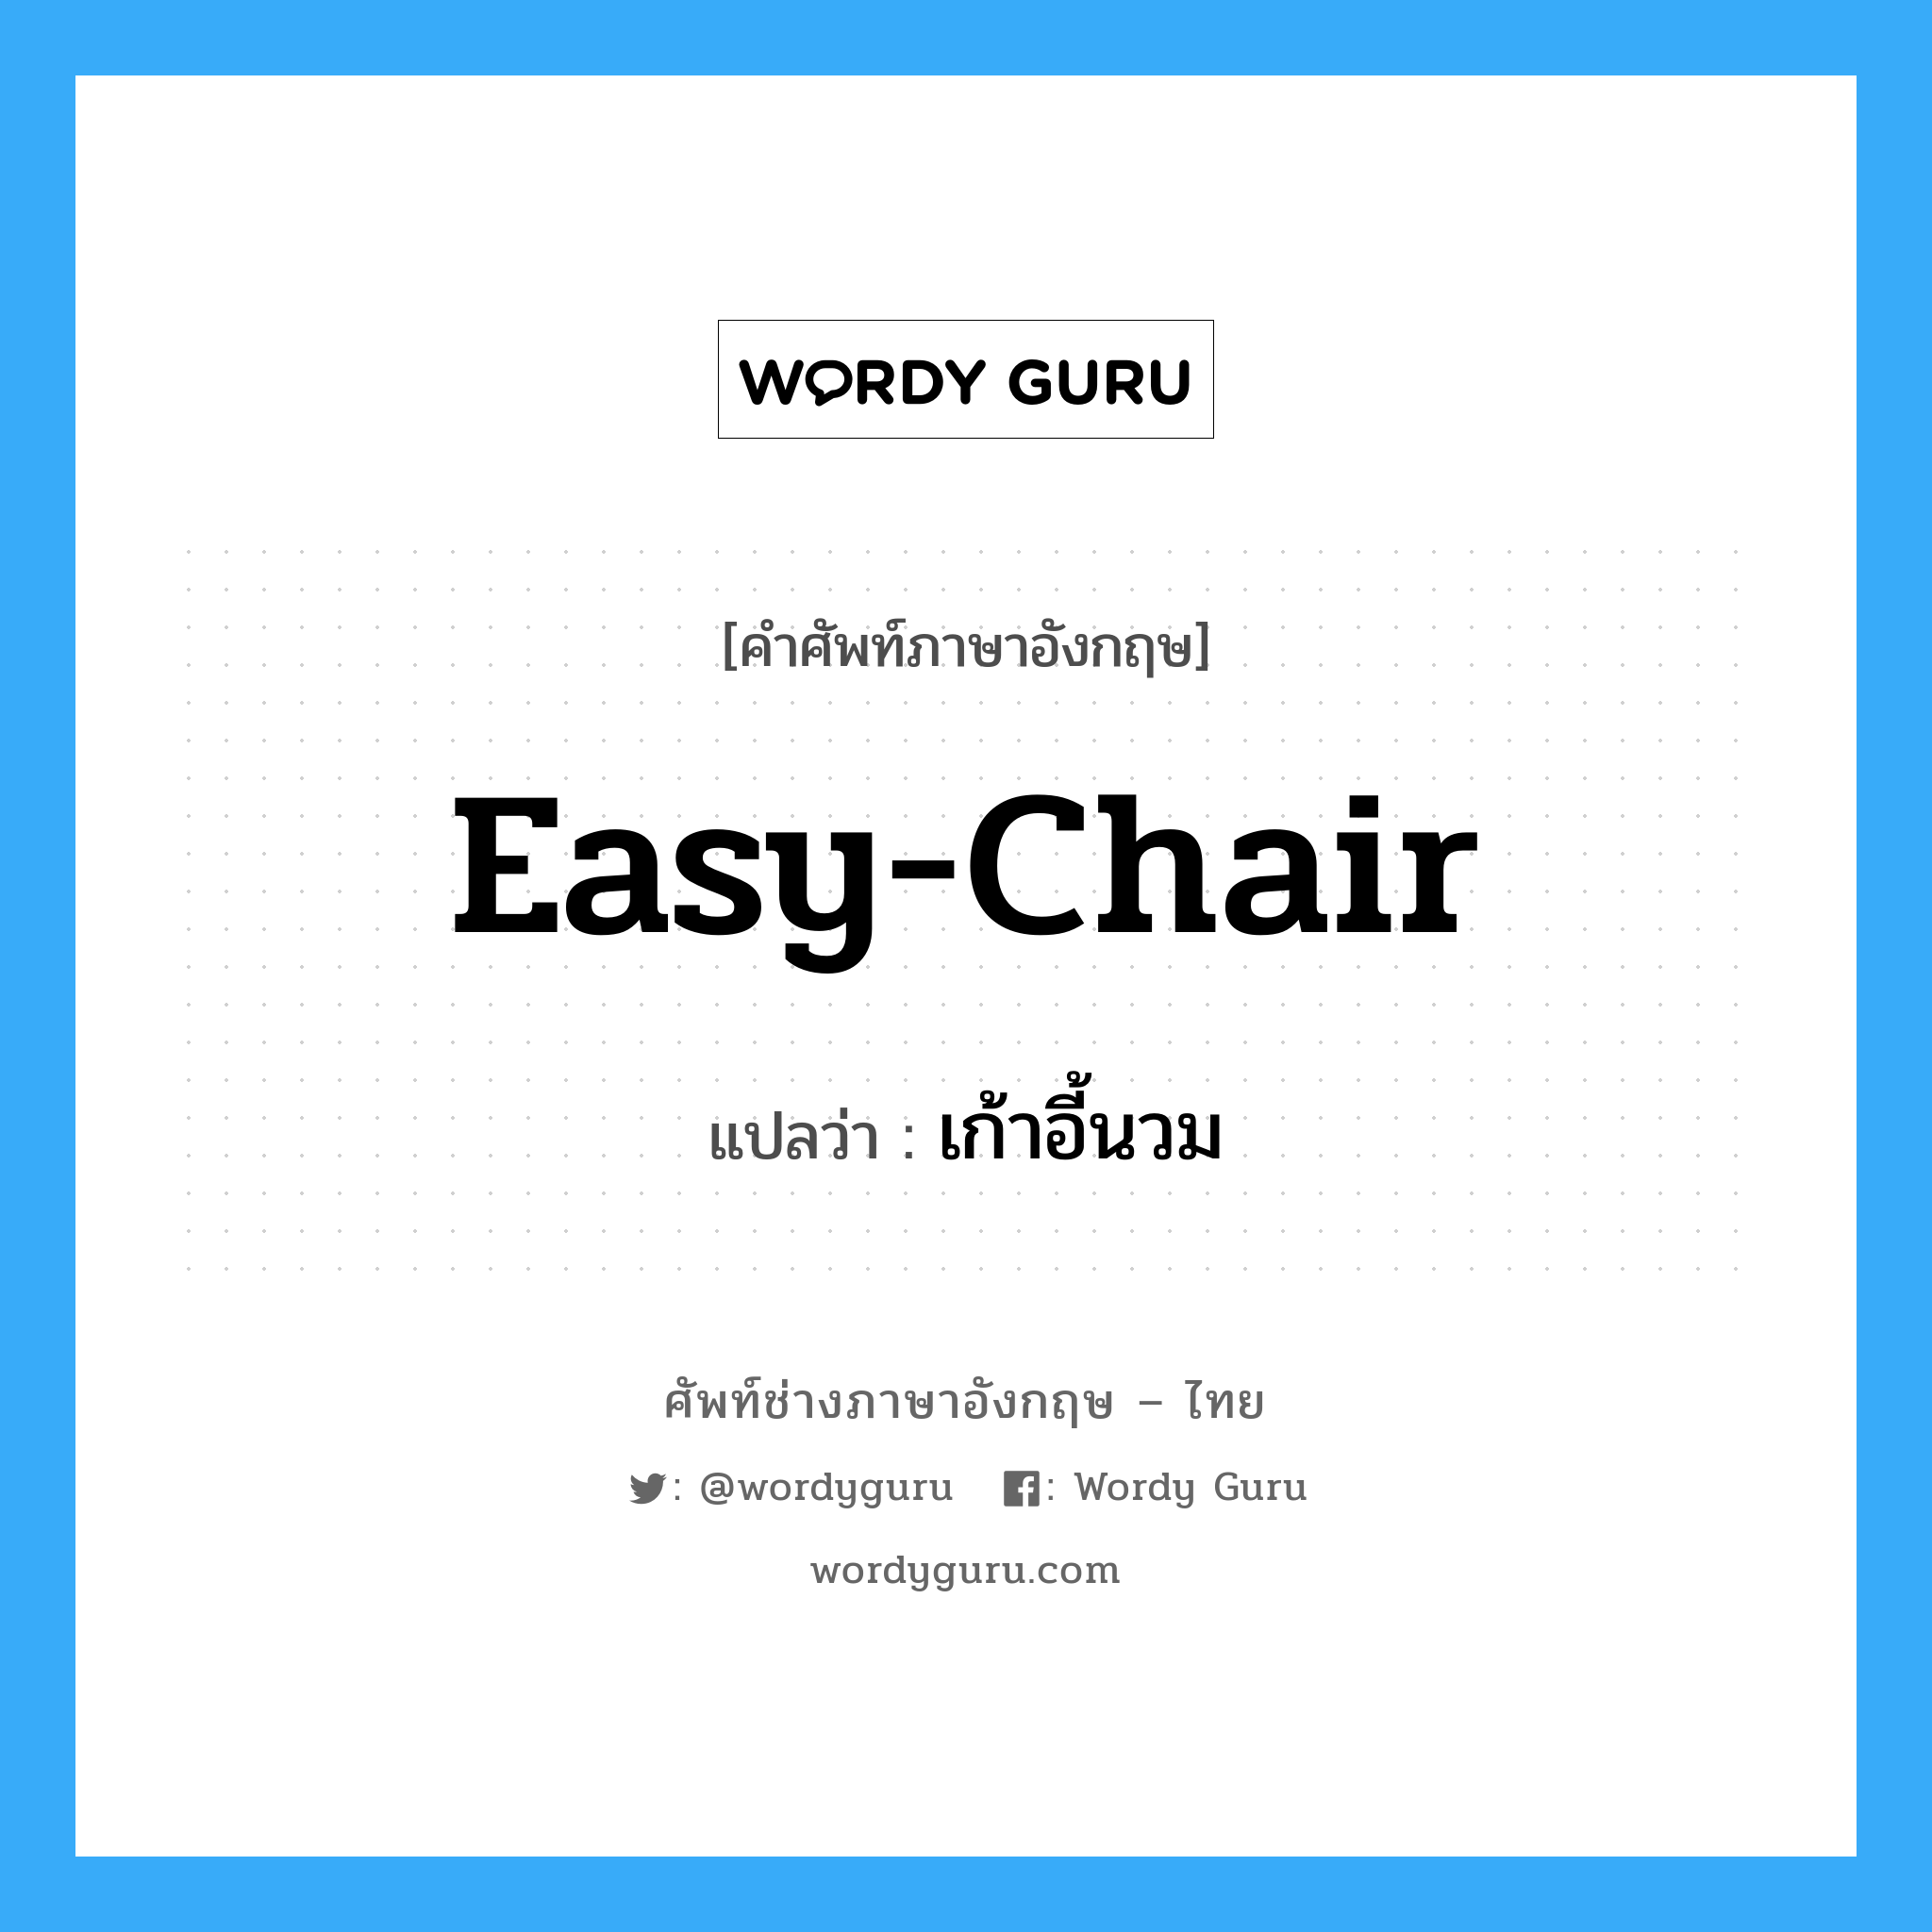 เก้าอี้นวม ภาษาอังกฤษ?, คำศัพท์ช่างภาษาอังกฤษ - ไทย เก้าอี้นวม คำศัพท์ภาษาอังกฤษ เก้าอี้นวม แปลว่า easy-chair